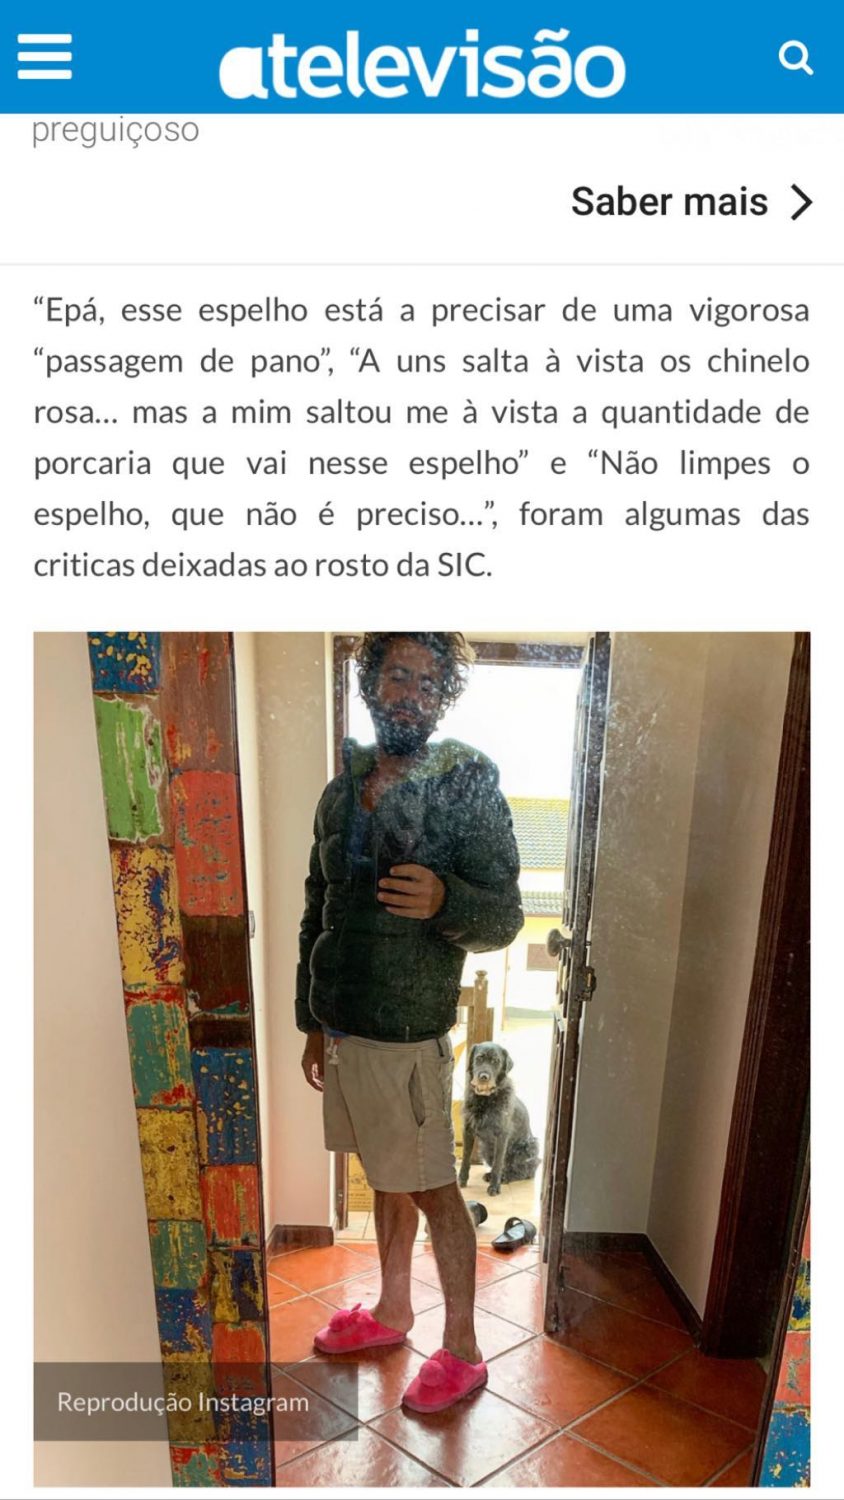 Depois das críticas sobre o espelho sujo, João Manzarra &#8220;responde&#8221; de forma hilariante